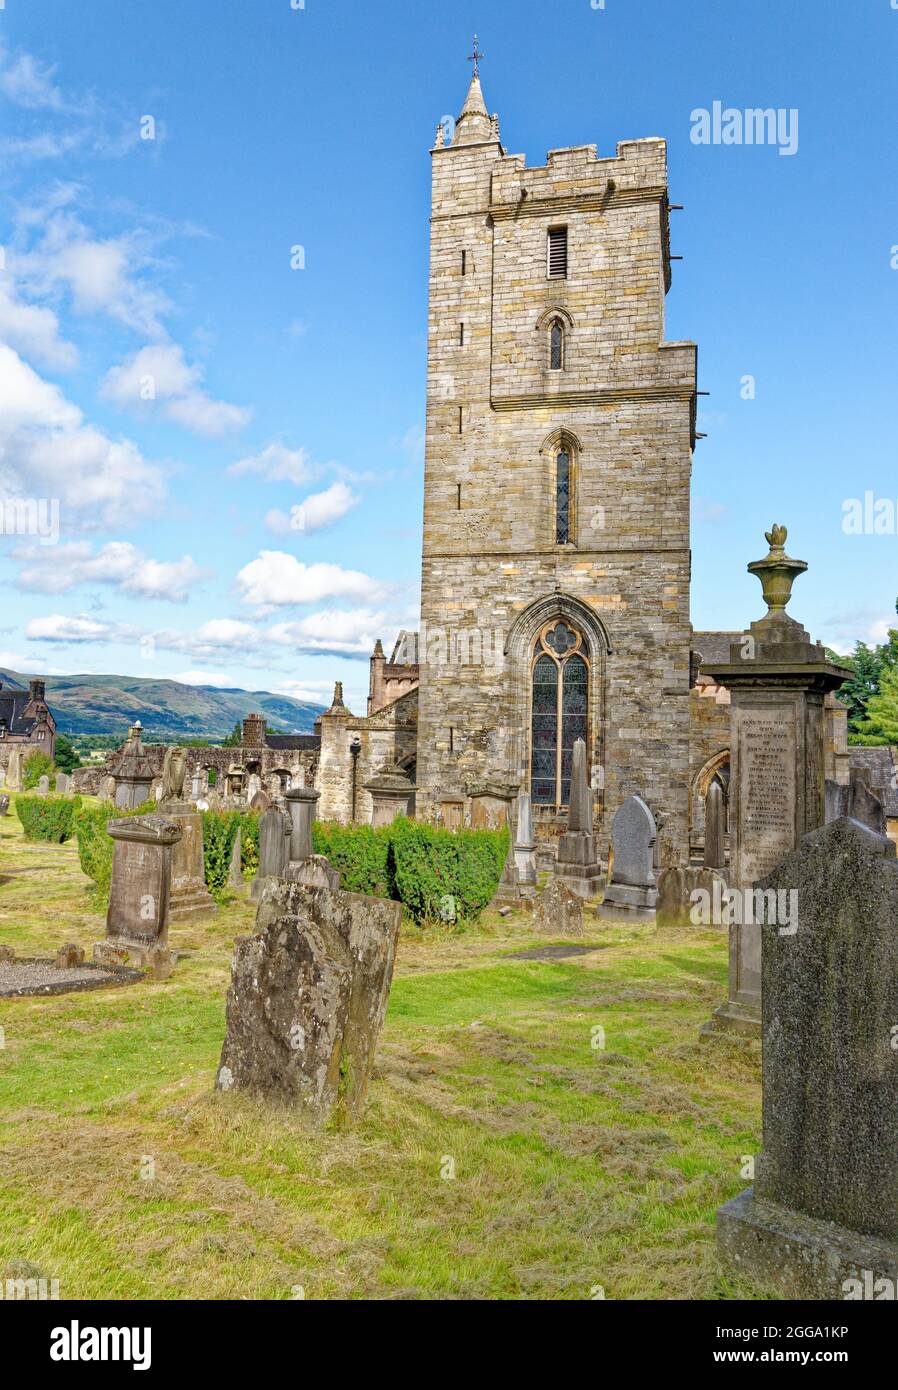 Église de la Sainte-rude ou Sainte-Croix avec clocher et cimetière royal avec pierres tombales historiques sur la colline du château au-dessus de Stirling Ecosse, roi Uni Banque D'Images